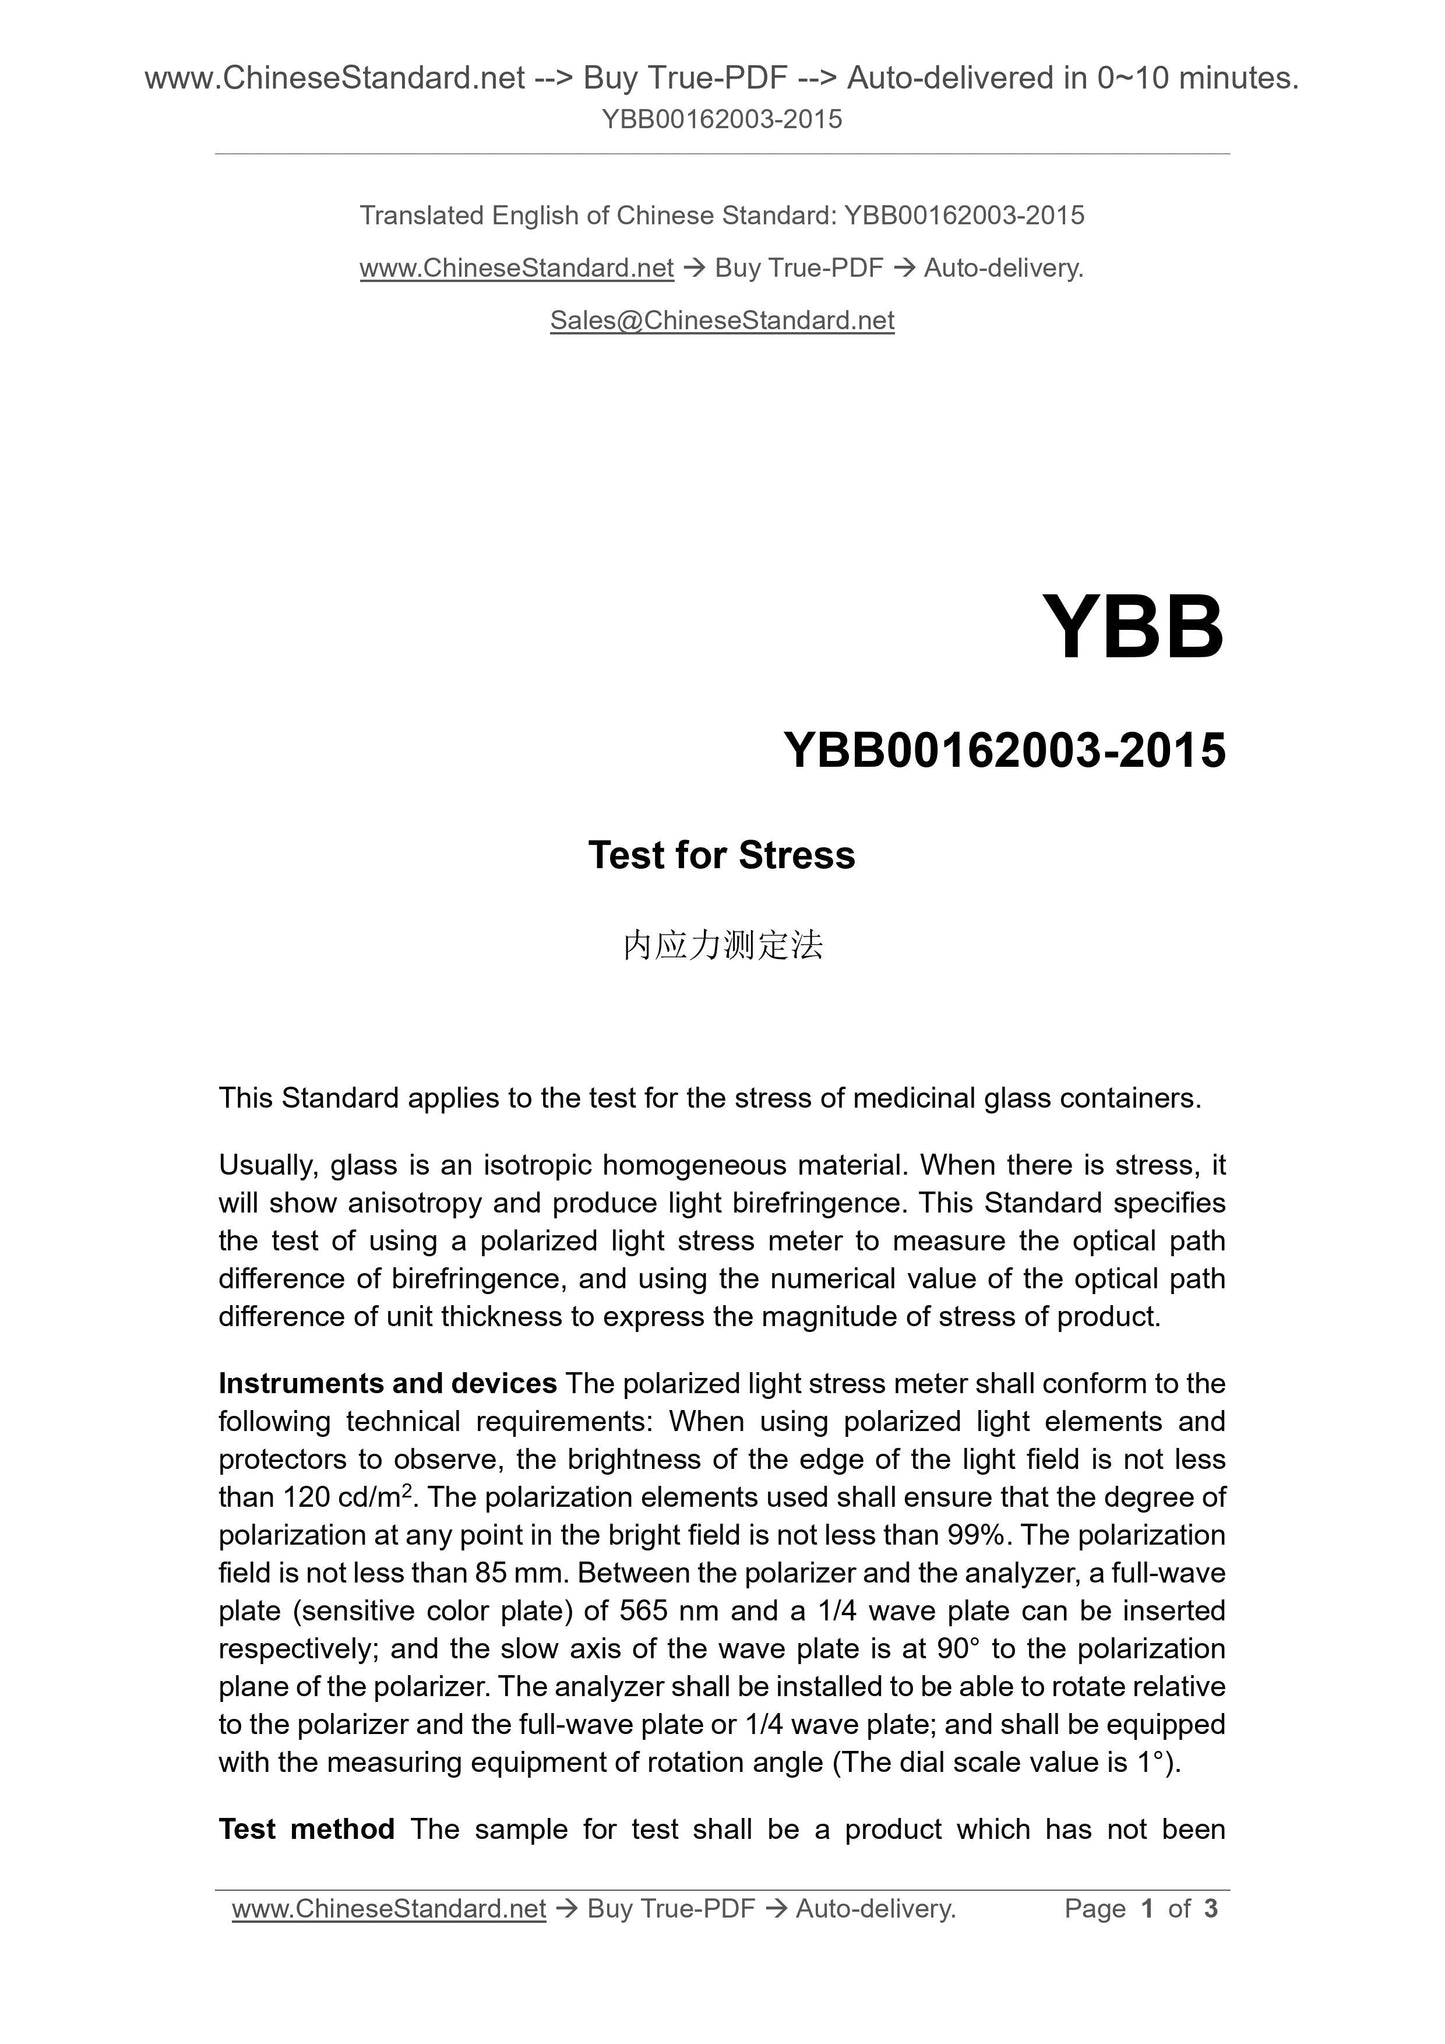 YBB 00162003-2015 Page 1